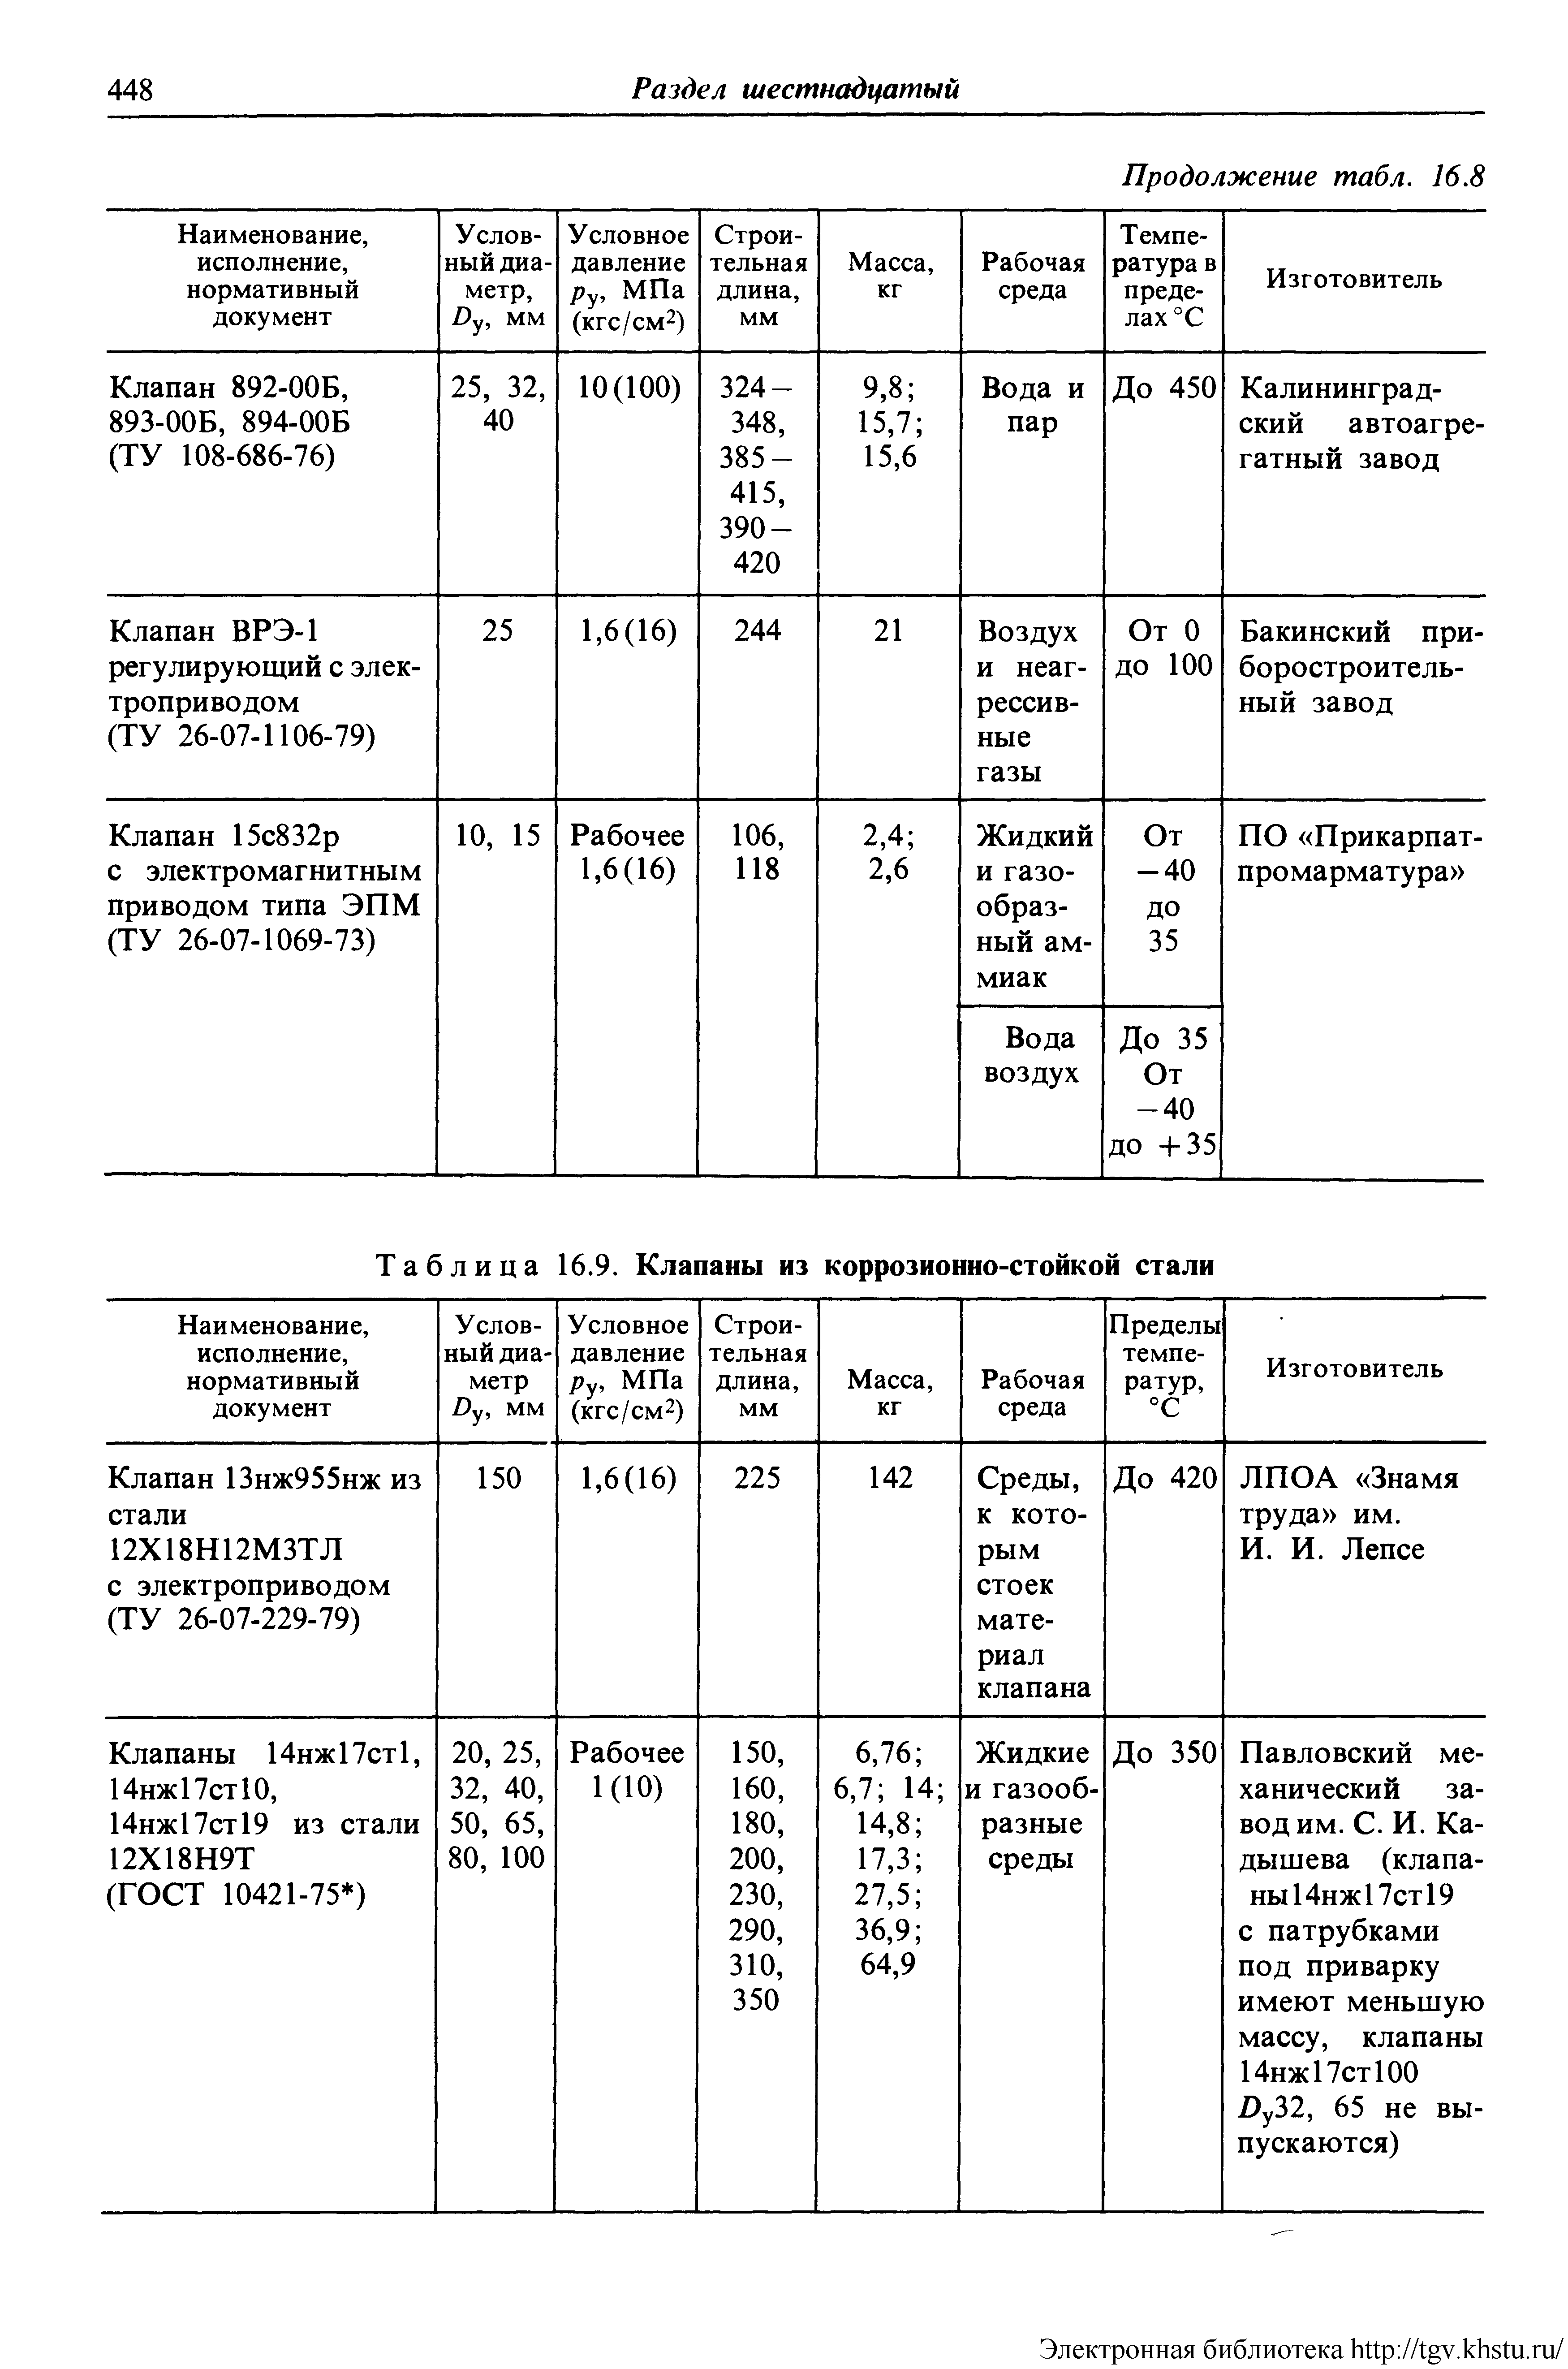 Таблица 16.9. Клапаны из коррозионно-стойкой стали
